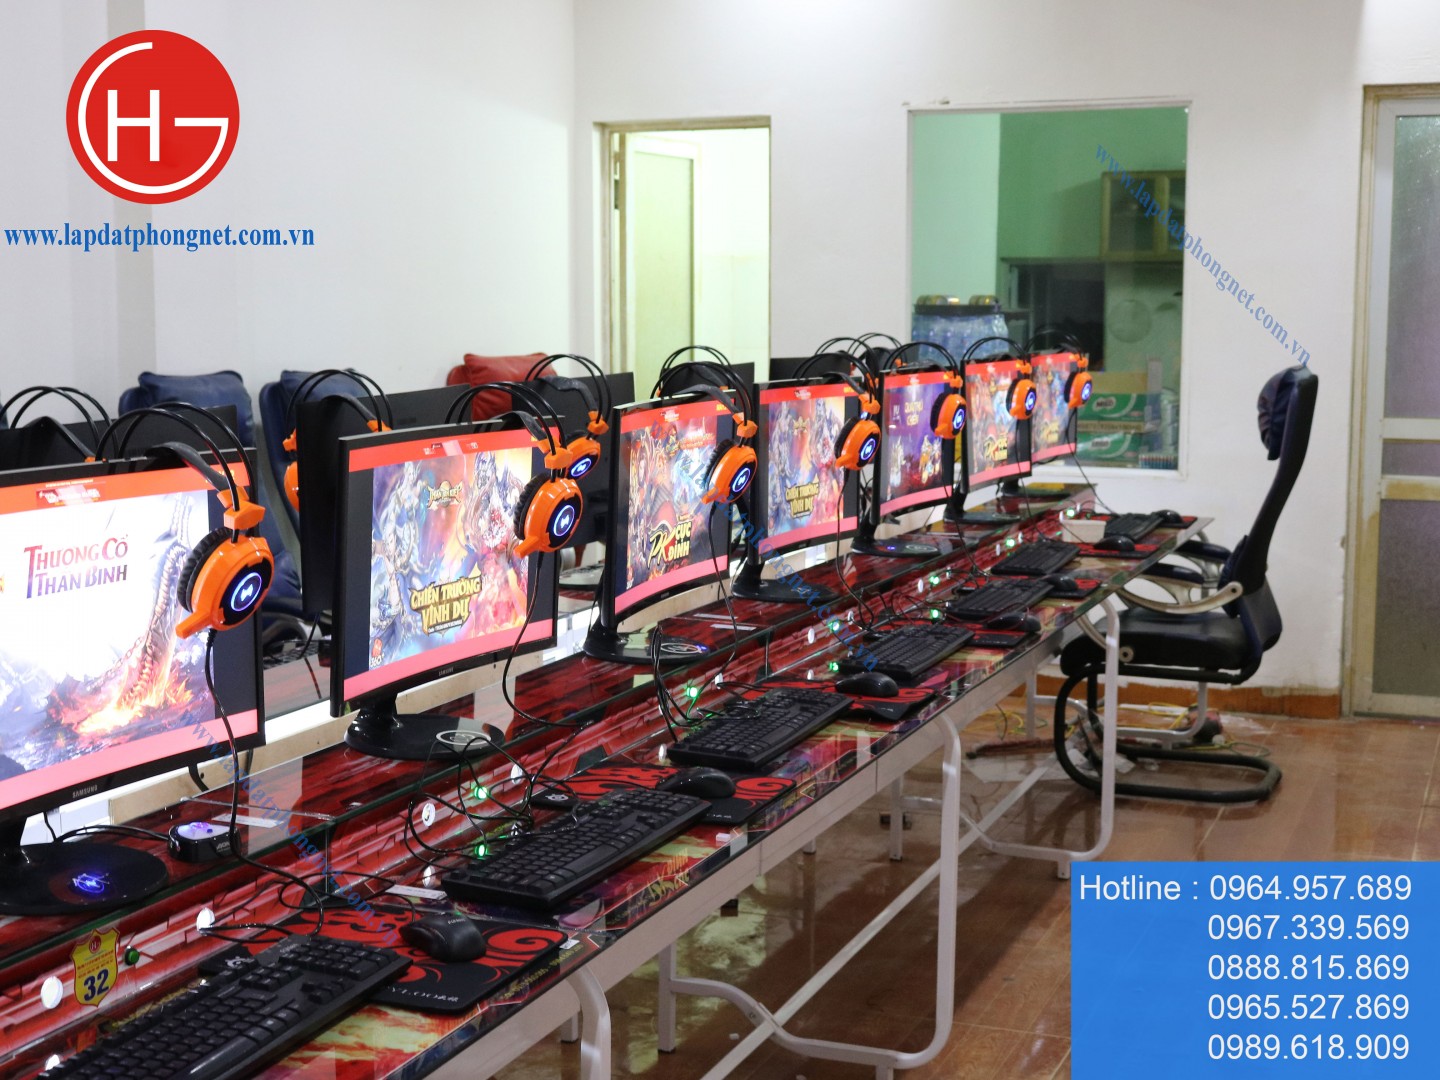 Lắp đặt phòng game net giá rẻ cho anh Cường tại Phổ Yên, Thái Nguyên